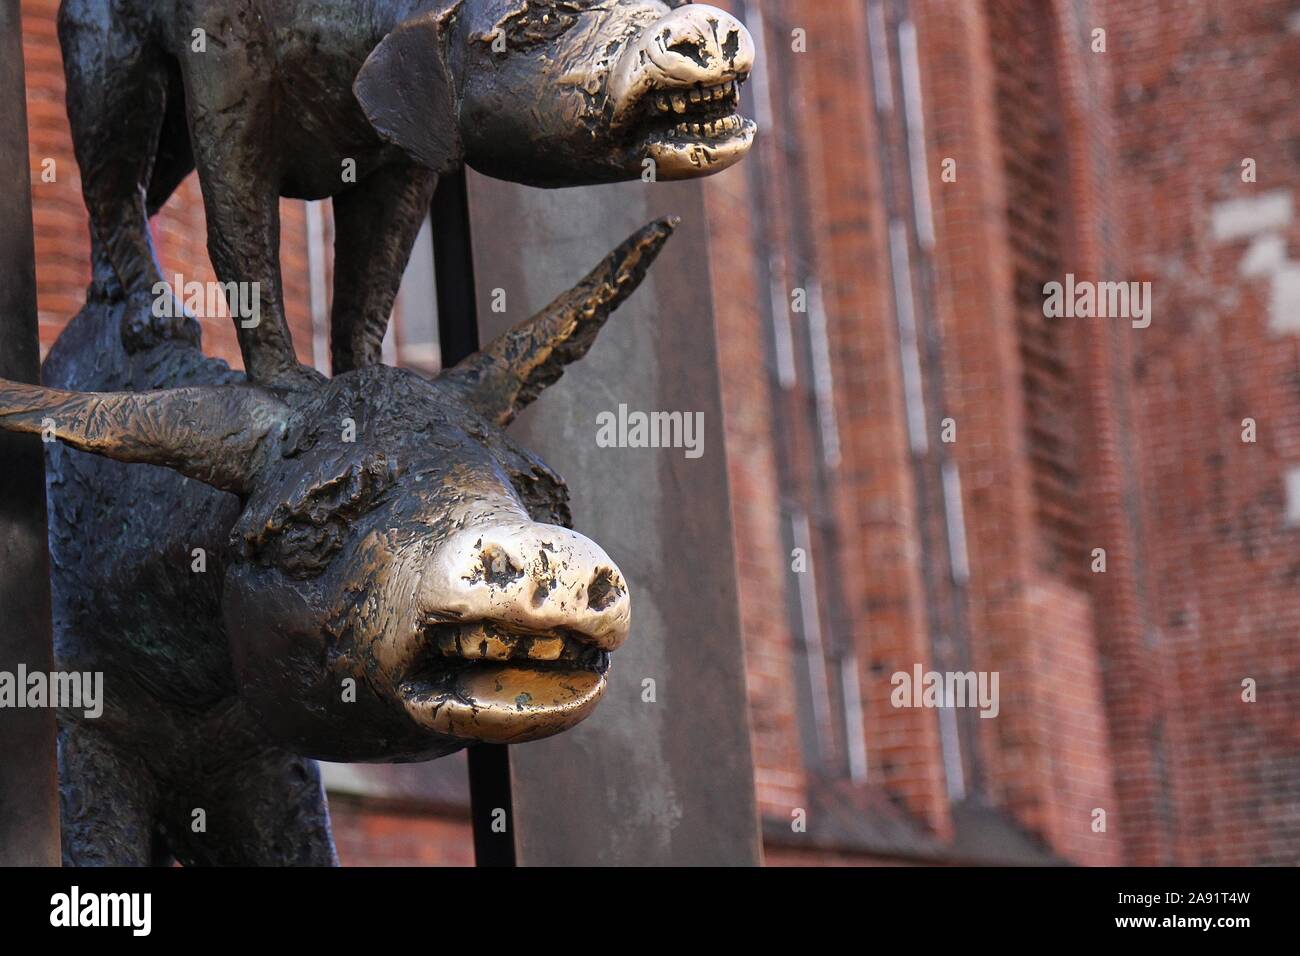 Detail von Riga nehmen auf die Bremer Stadtmusikanten. Die Skulptur zeigt die Tiere durch eine Wand brechen, symbolisch für den Eisernen Vorhang. Stockfoto